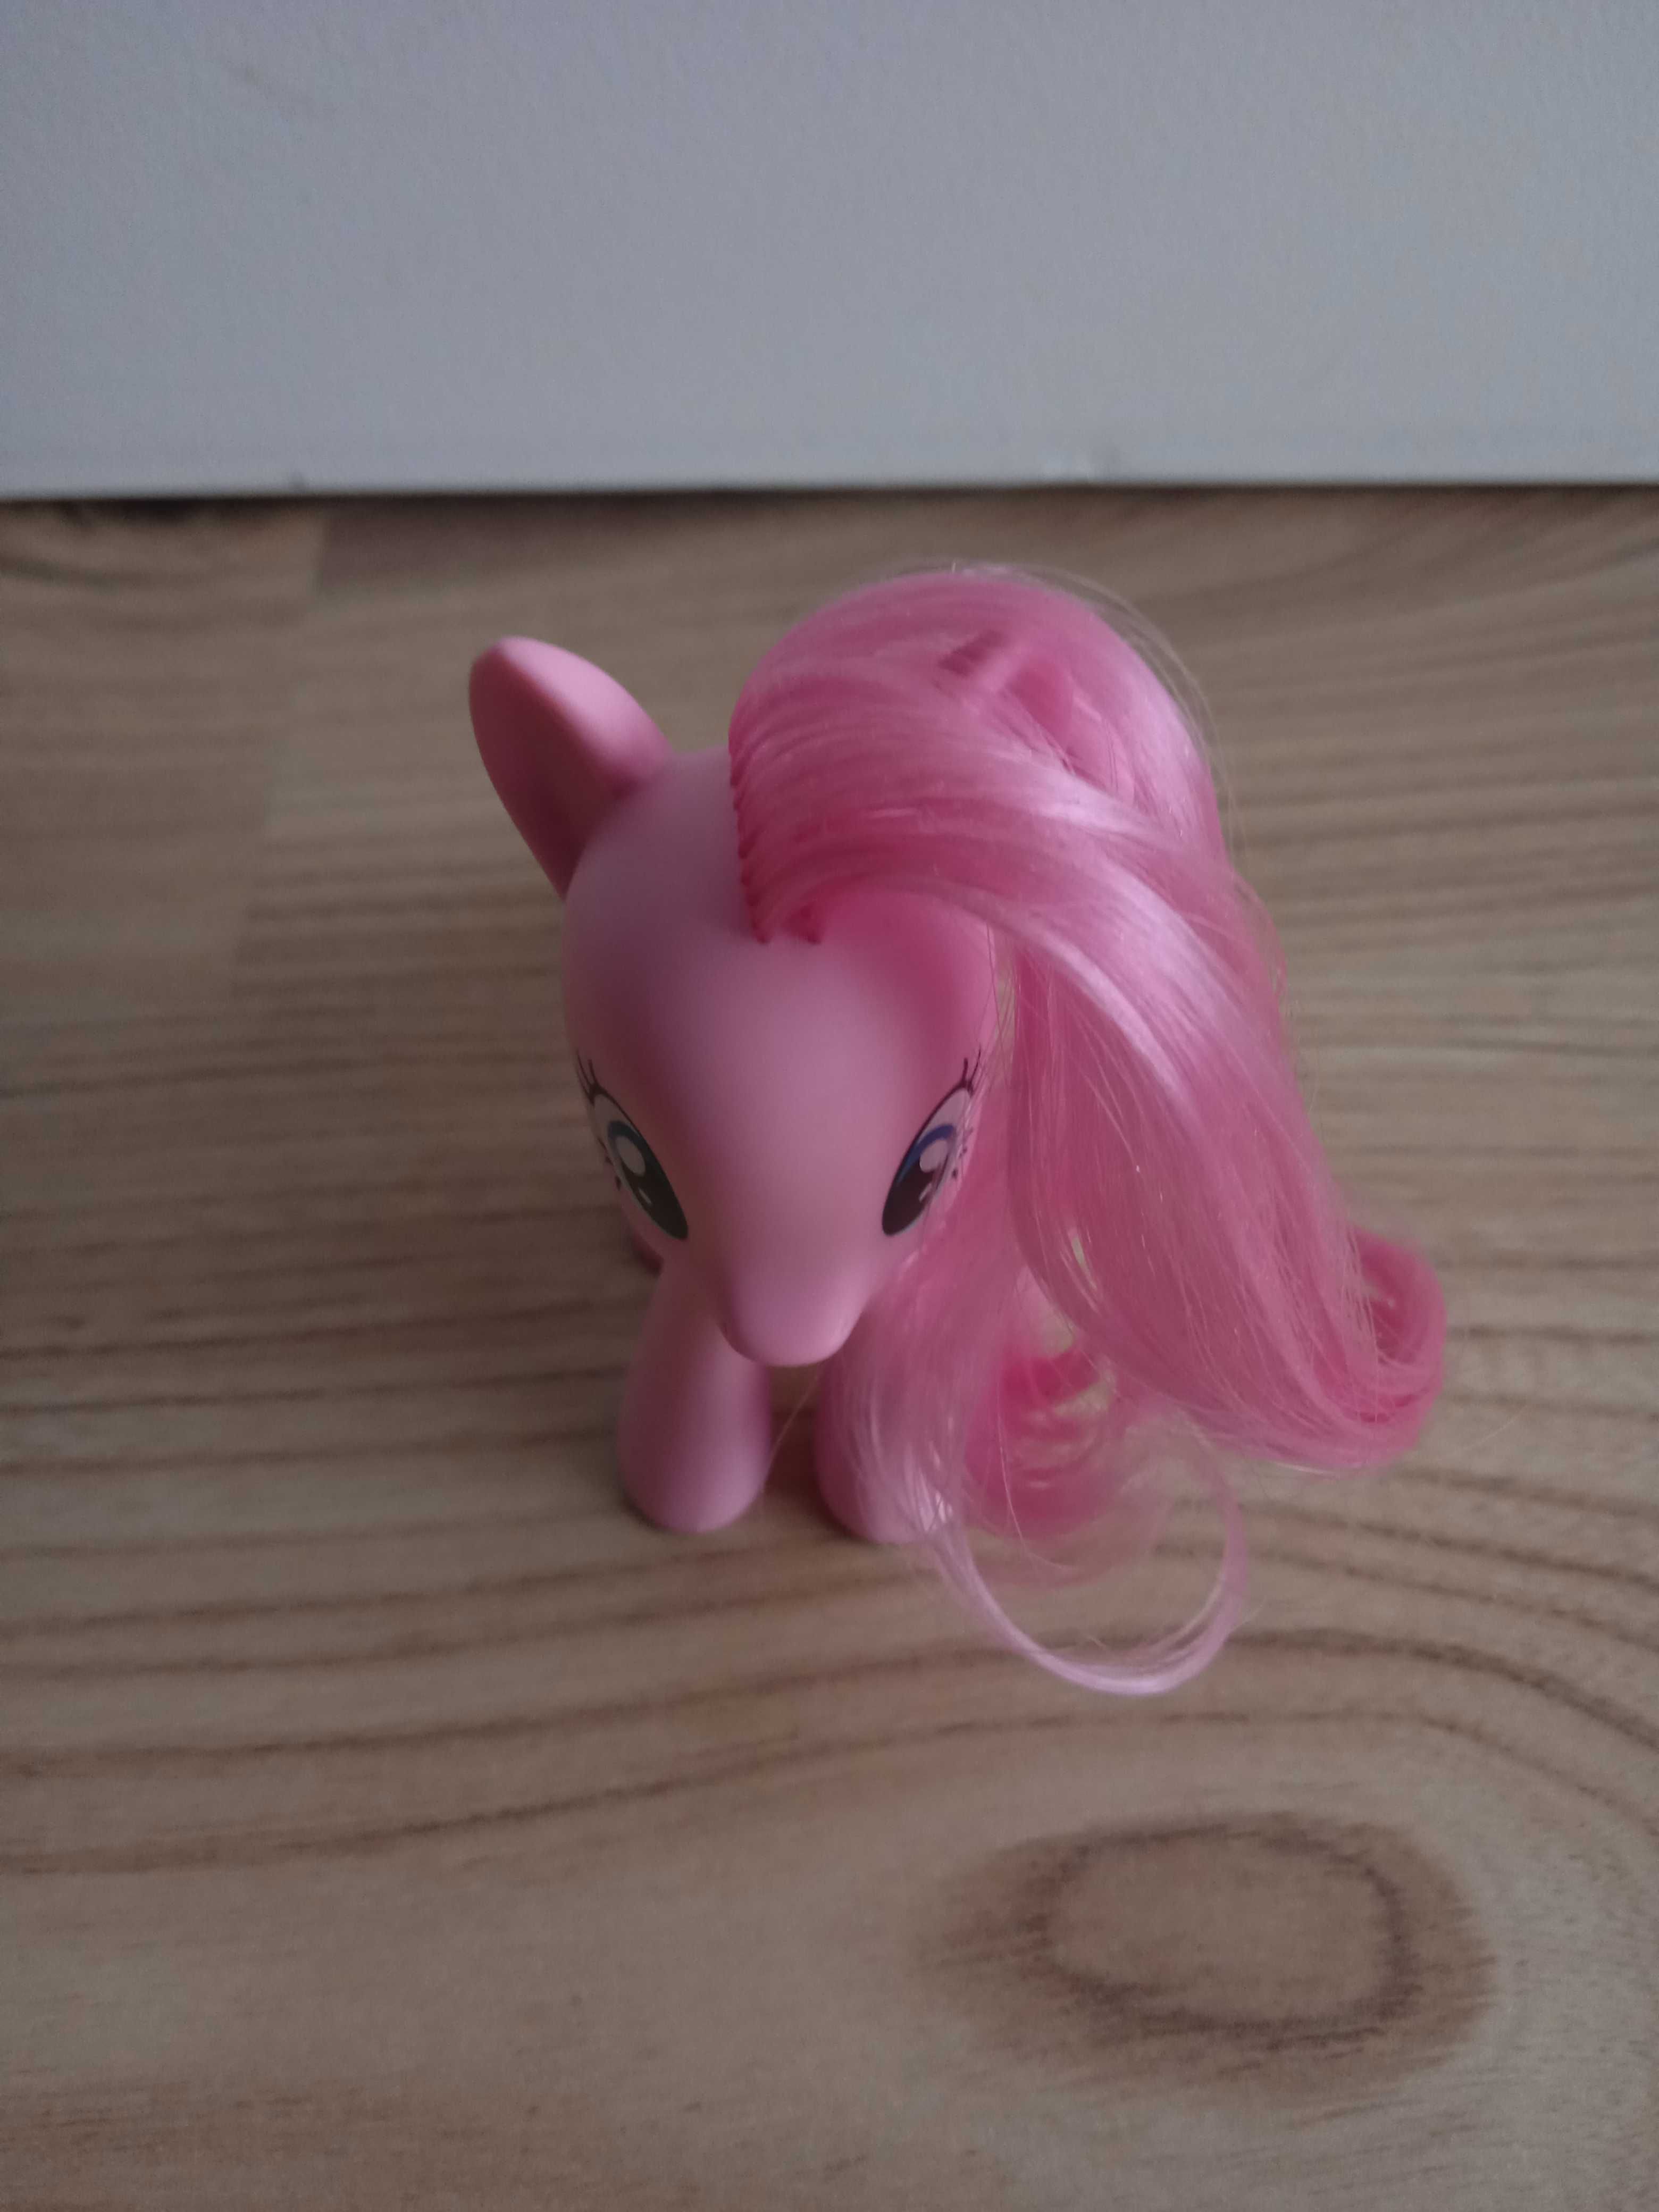 Figurka Hasbro z serii My Little Pony - Pinki Pie ok. 8 cm. wys.